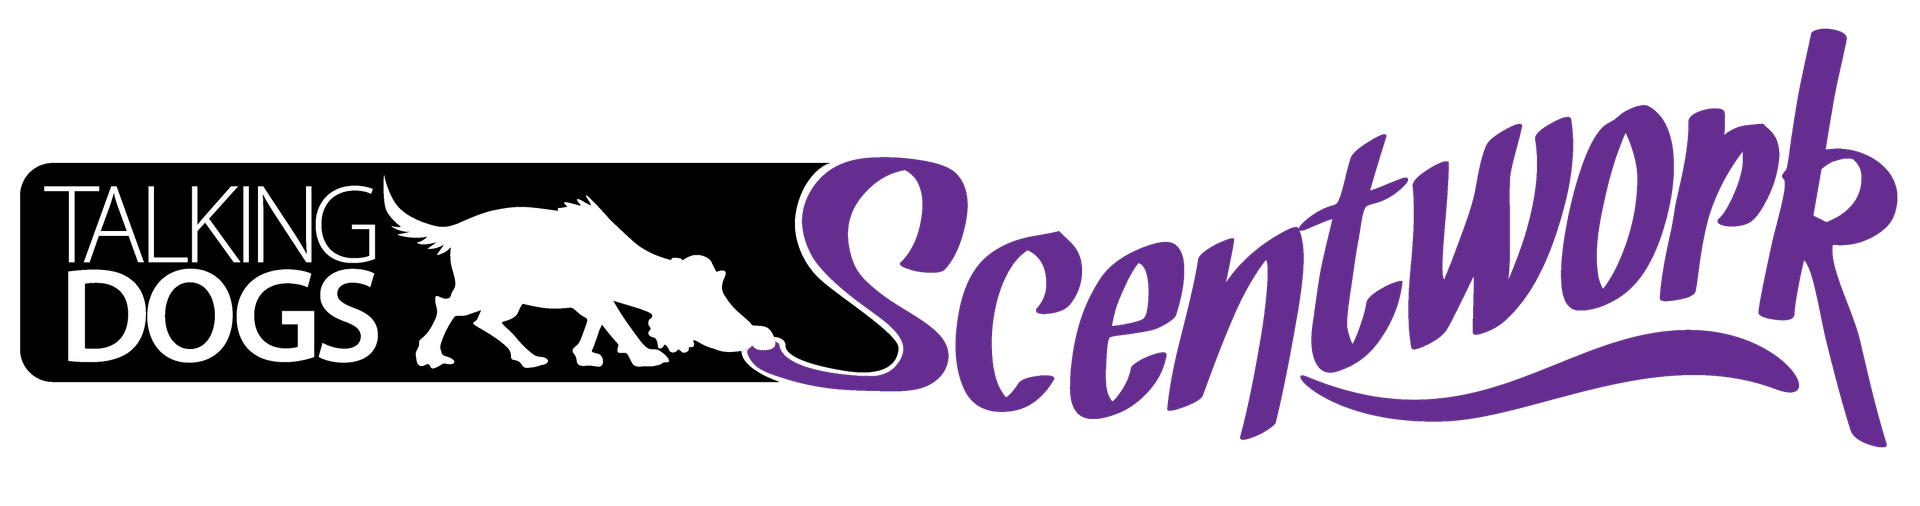 Scentwork Logo